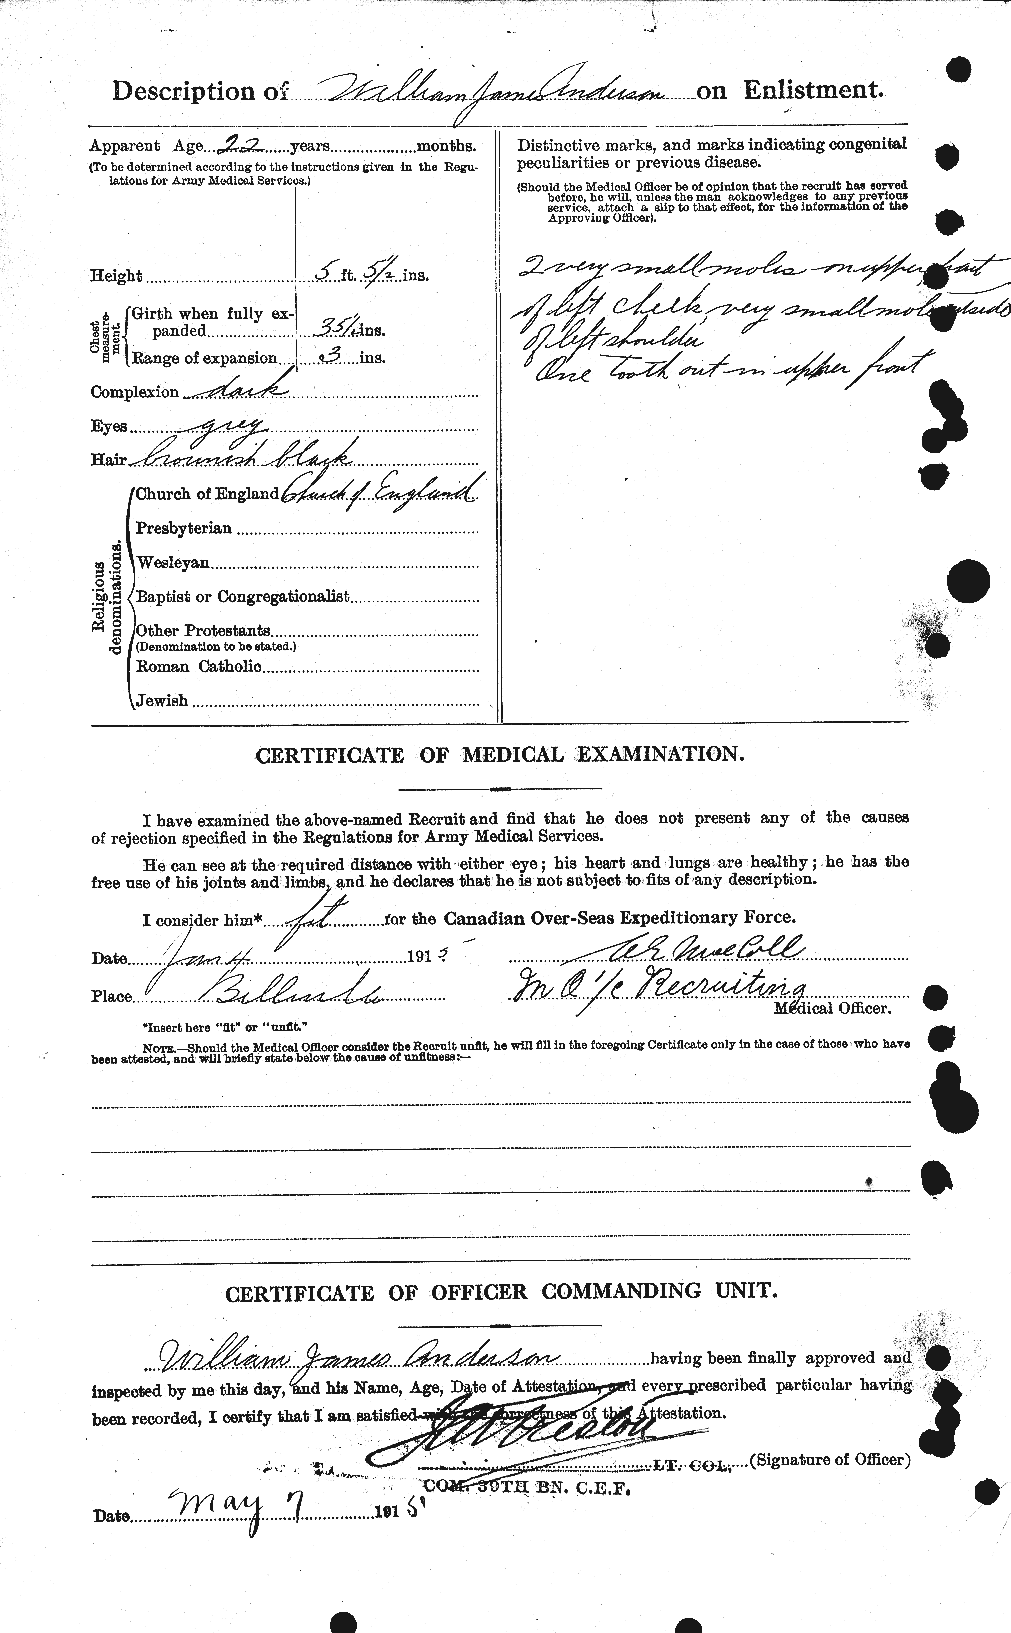 Dossiers du Personnel de la Première Guerre mondiale - CEC 210704b